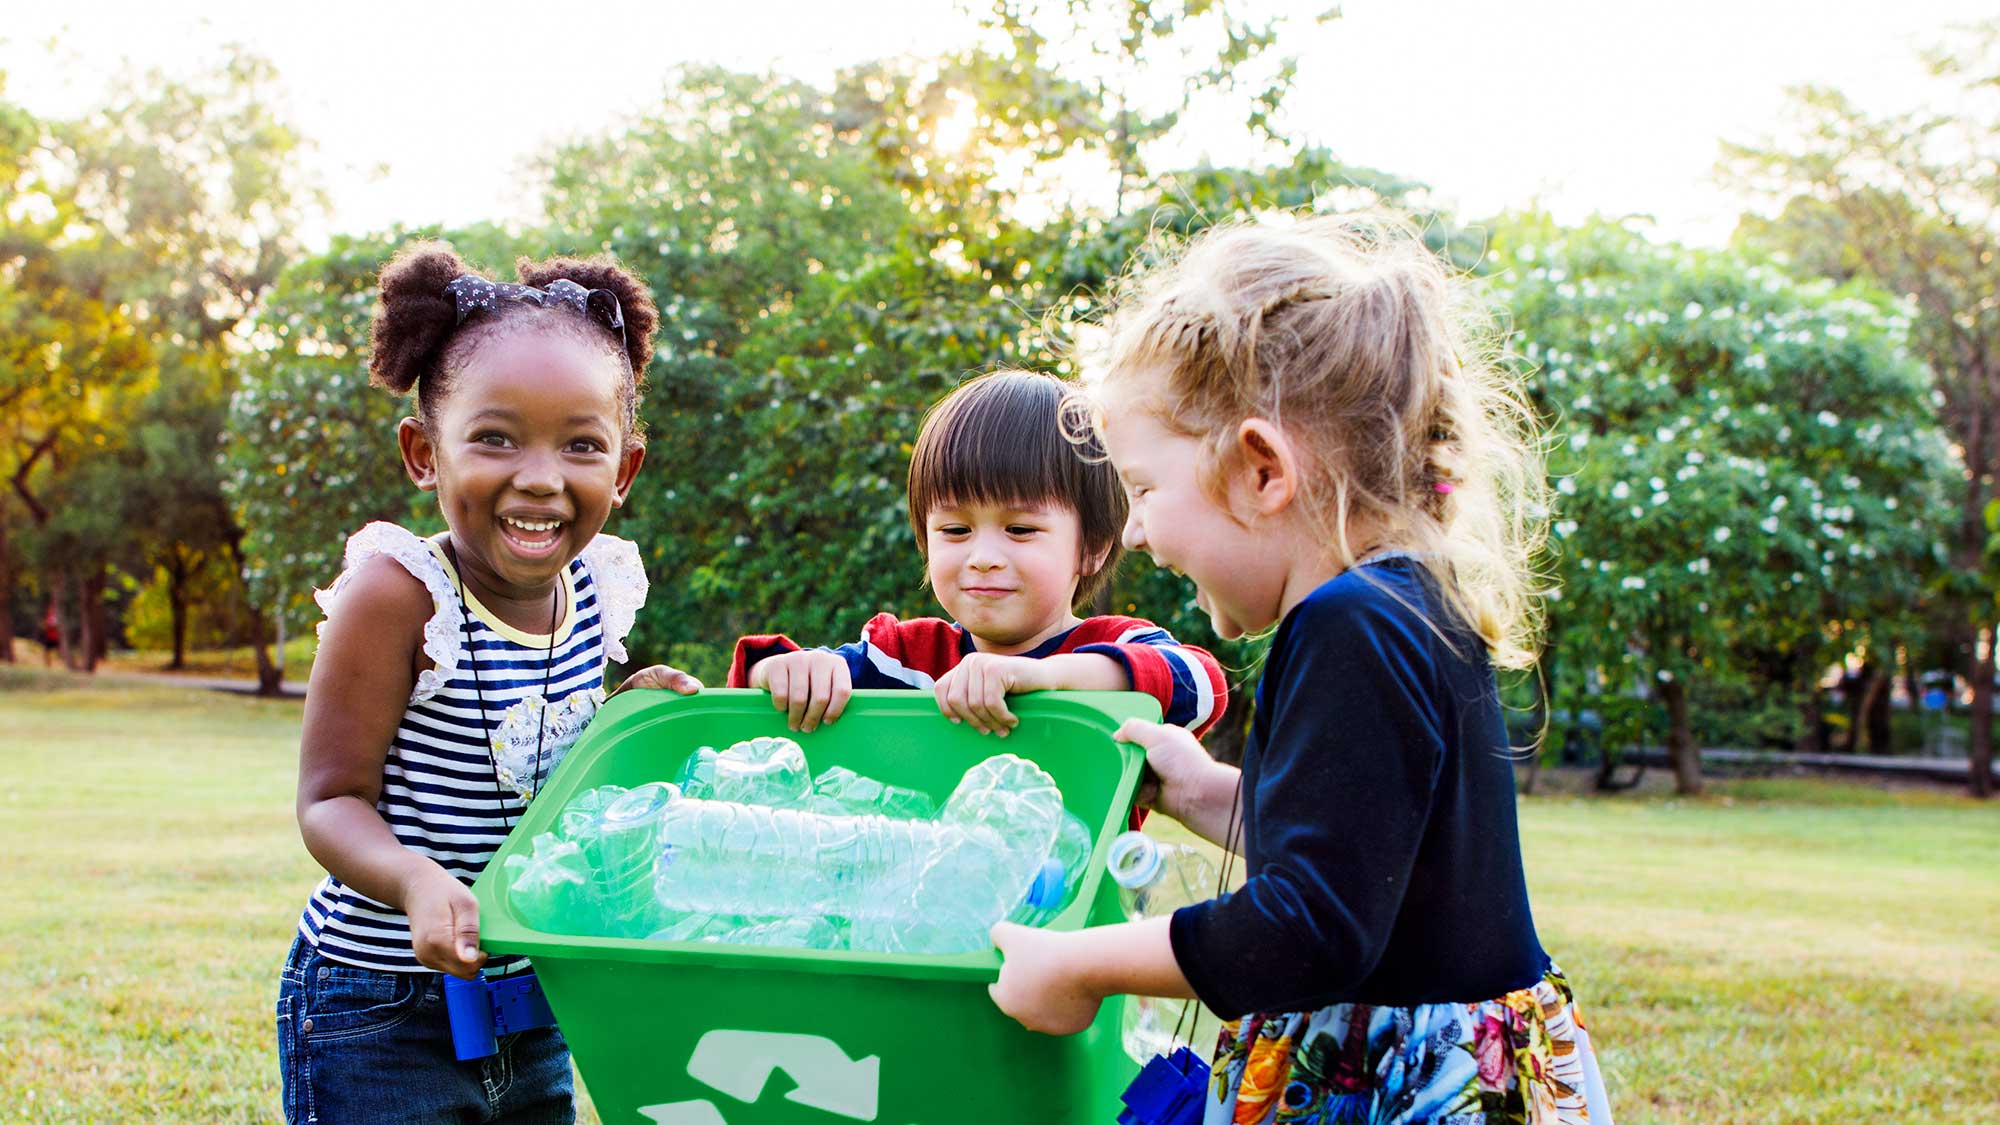 Kinder sammeln wiederverwertbare Materialien in einem grünen Eimer. 